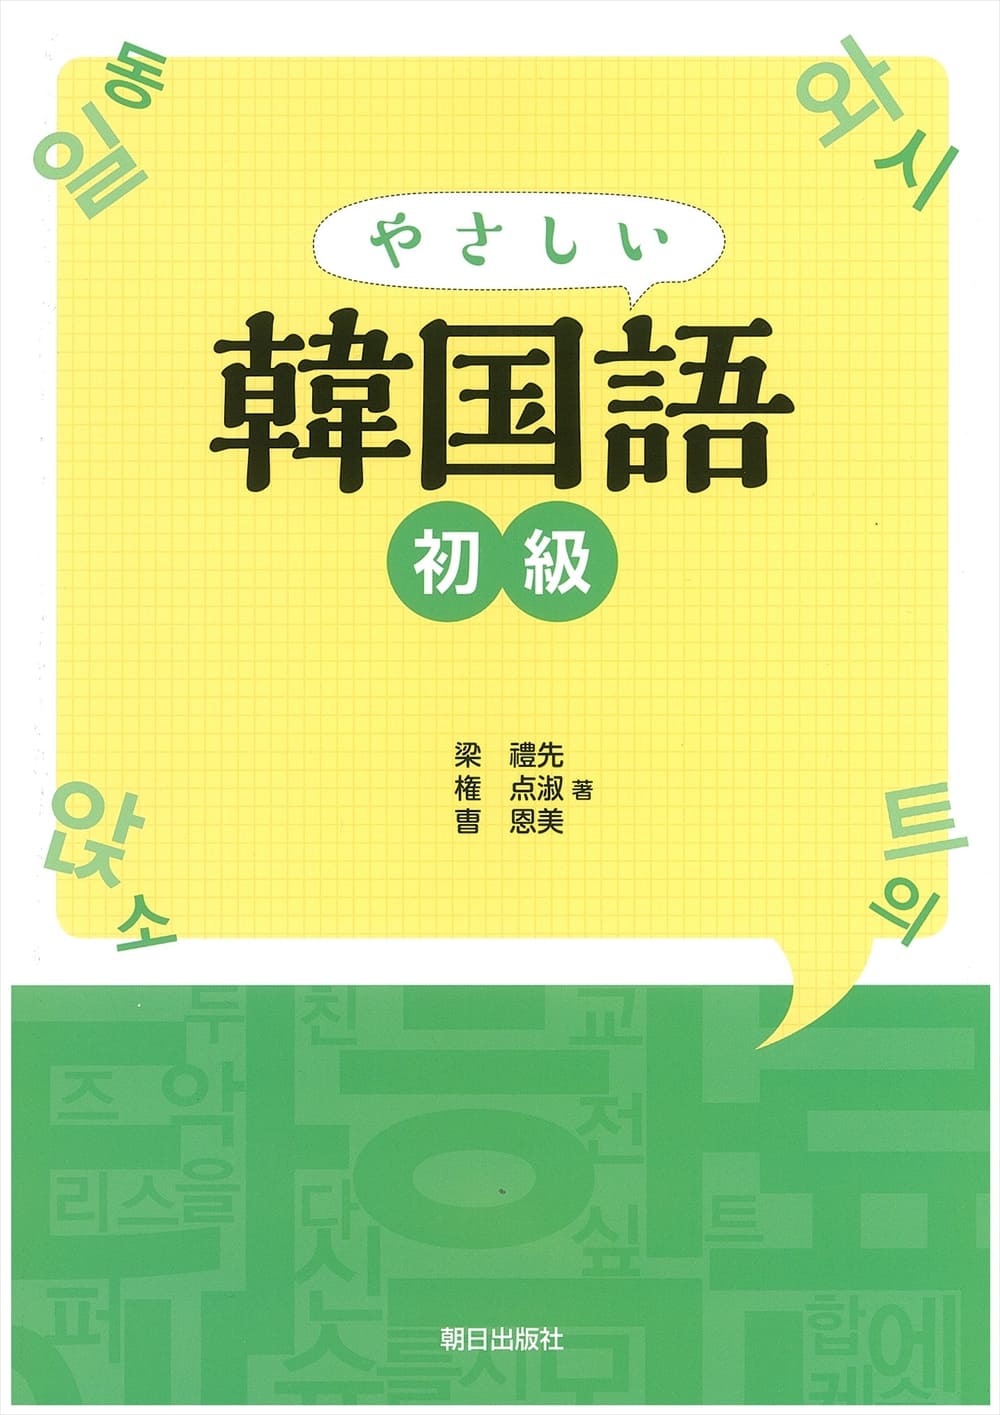 やさしい韓国語 初級 教科書 韓国 朝鮮語 朝日出版社